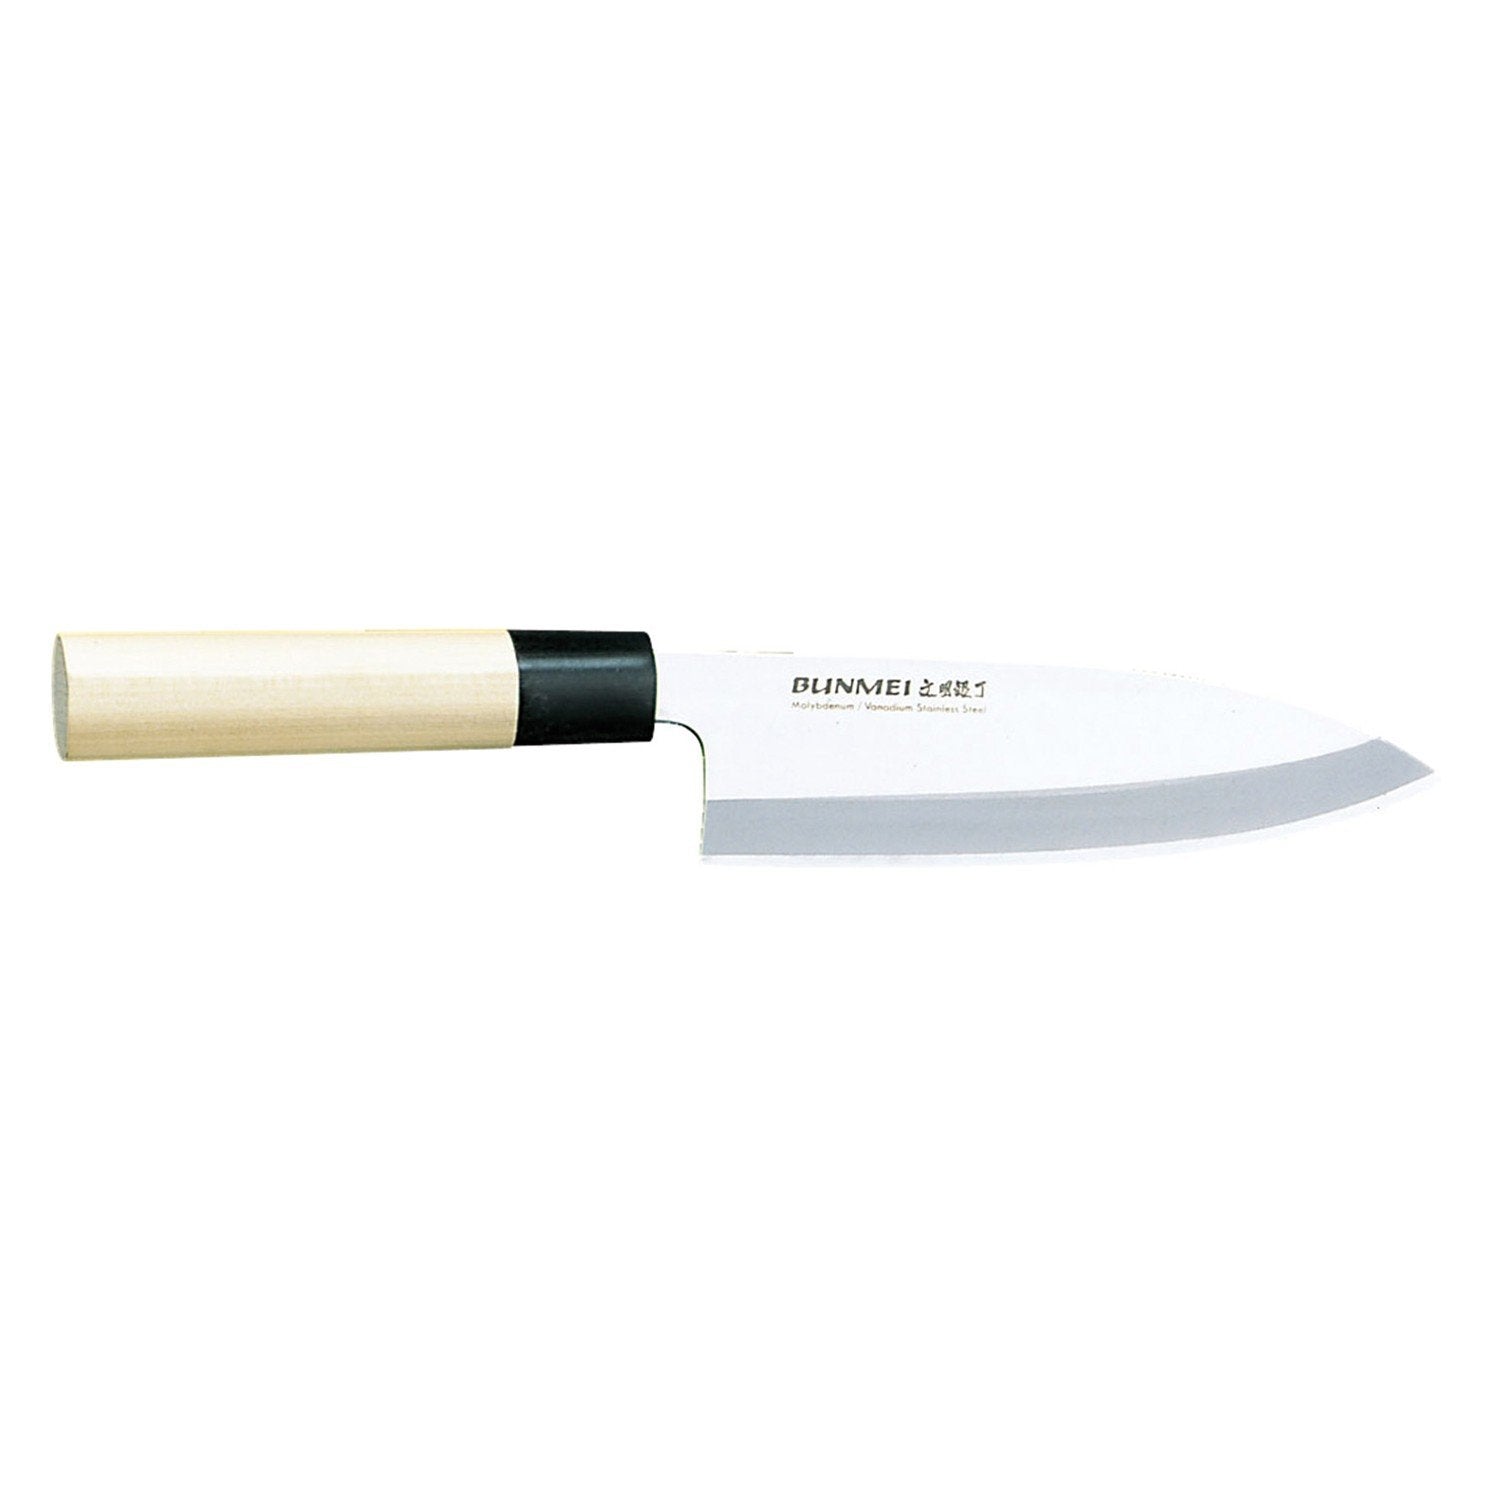 Global Bunmei deba kniv 1801/165 mm